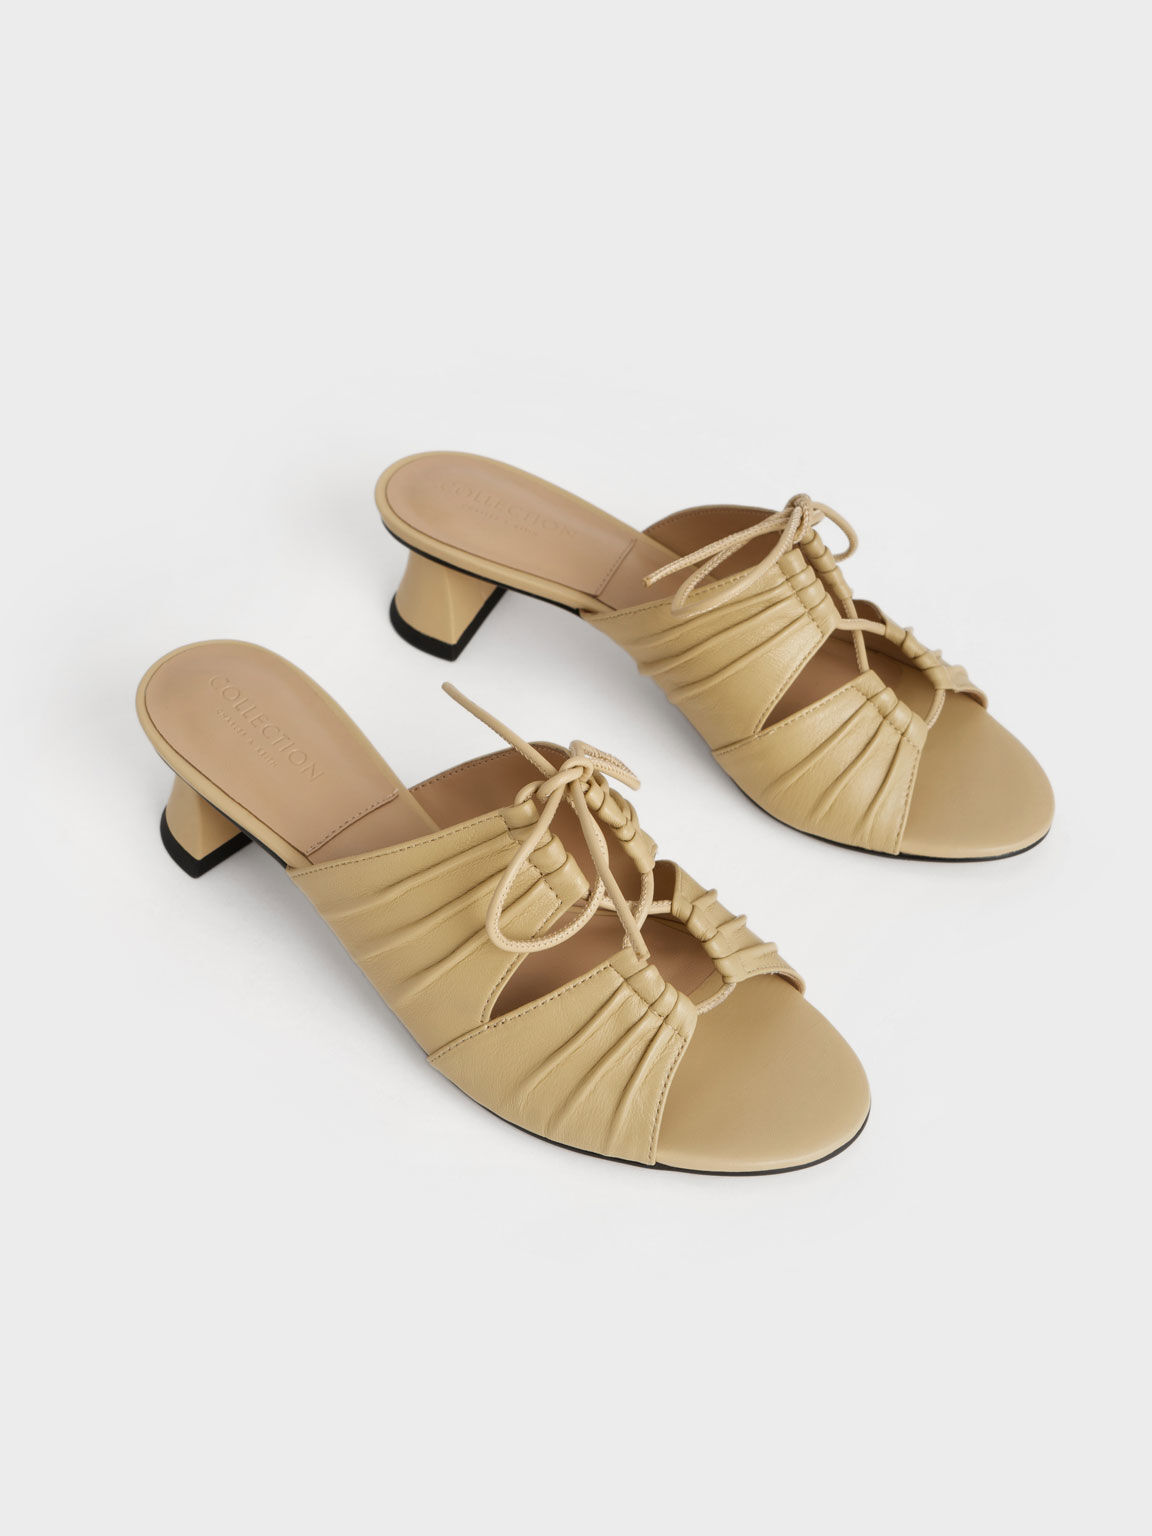 Sepatu Mules Landis Leather Round-Toe, Sand, hi-res